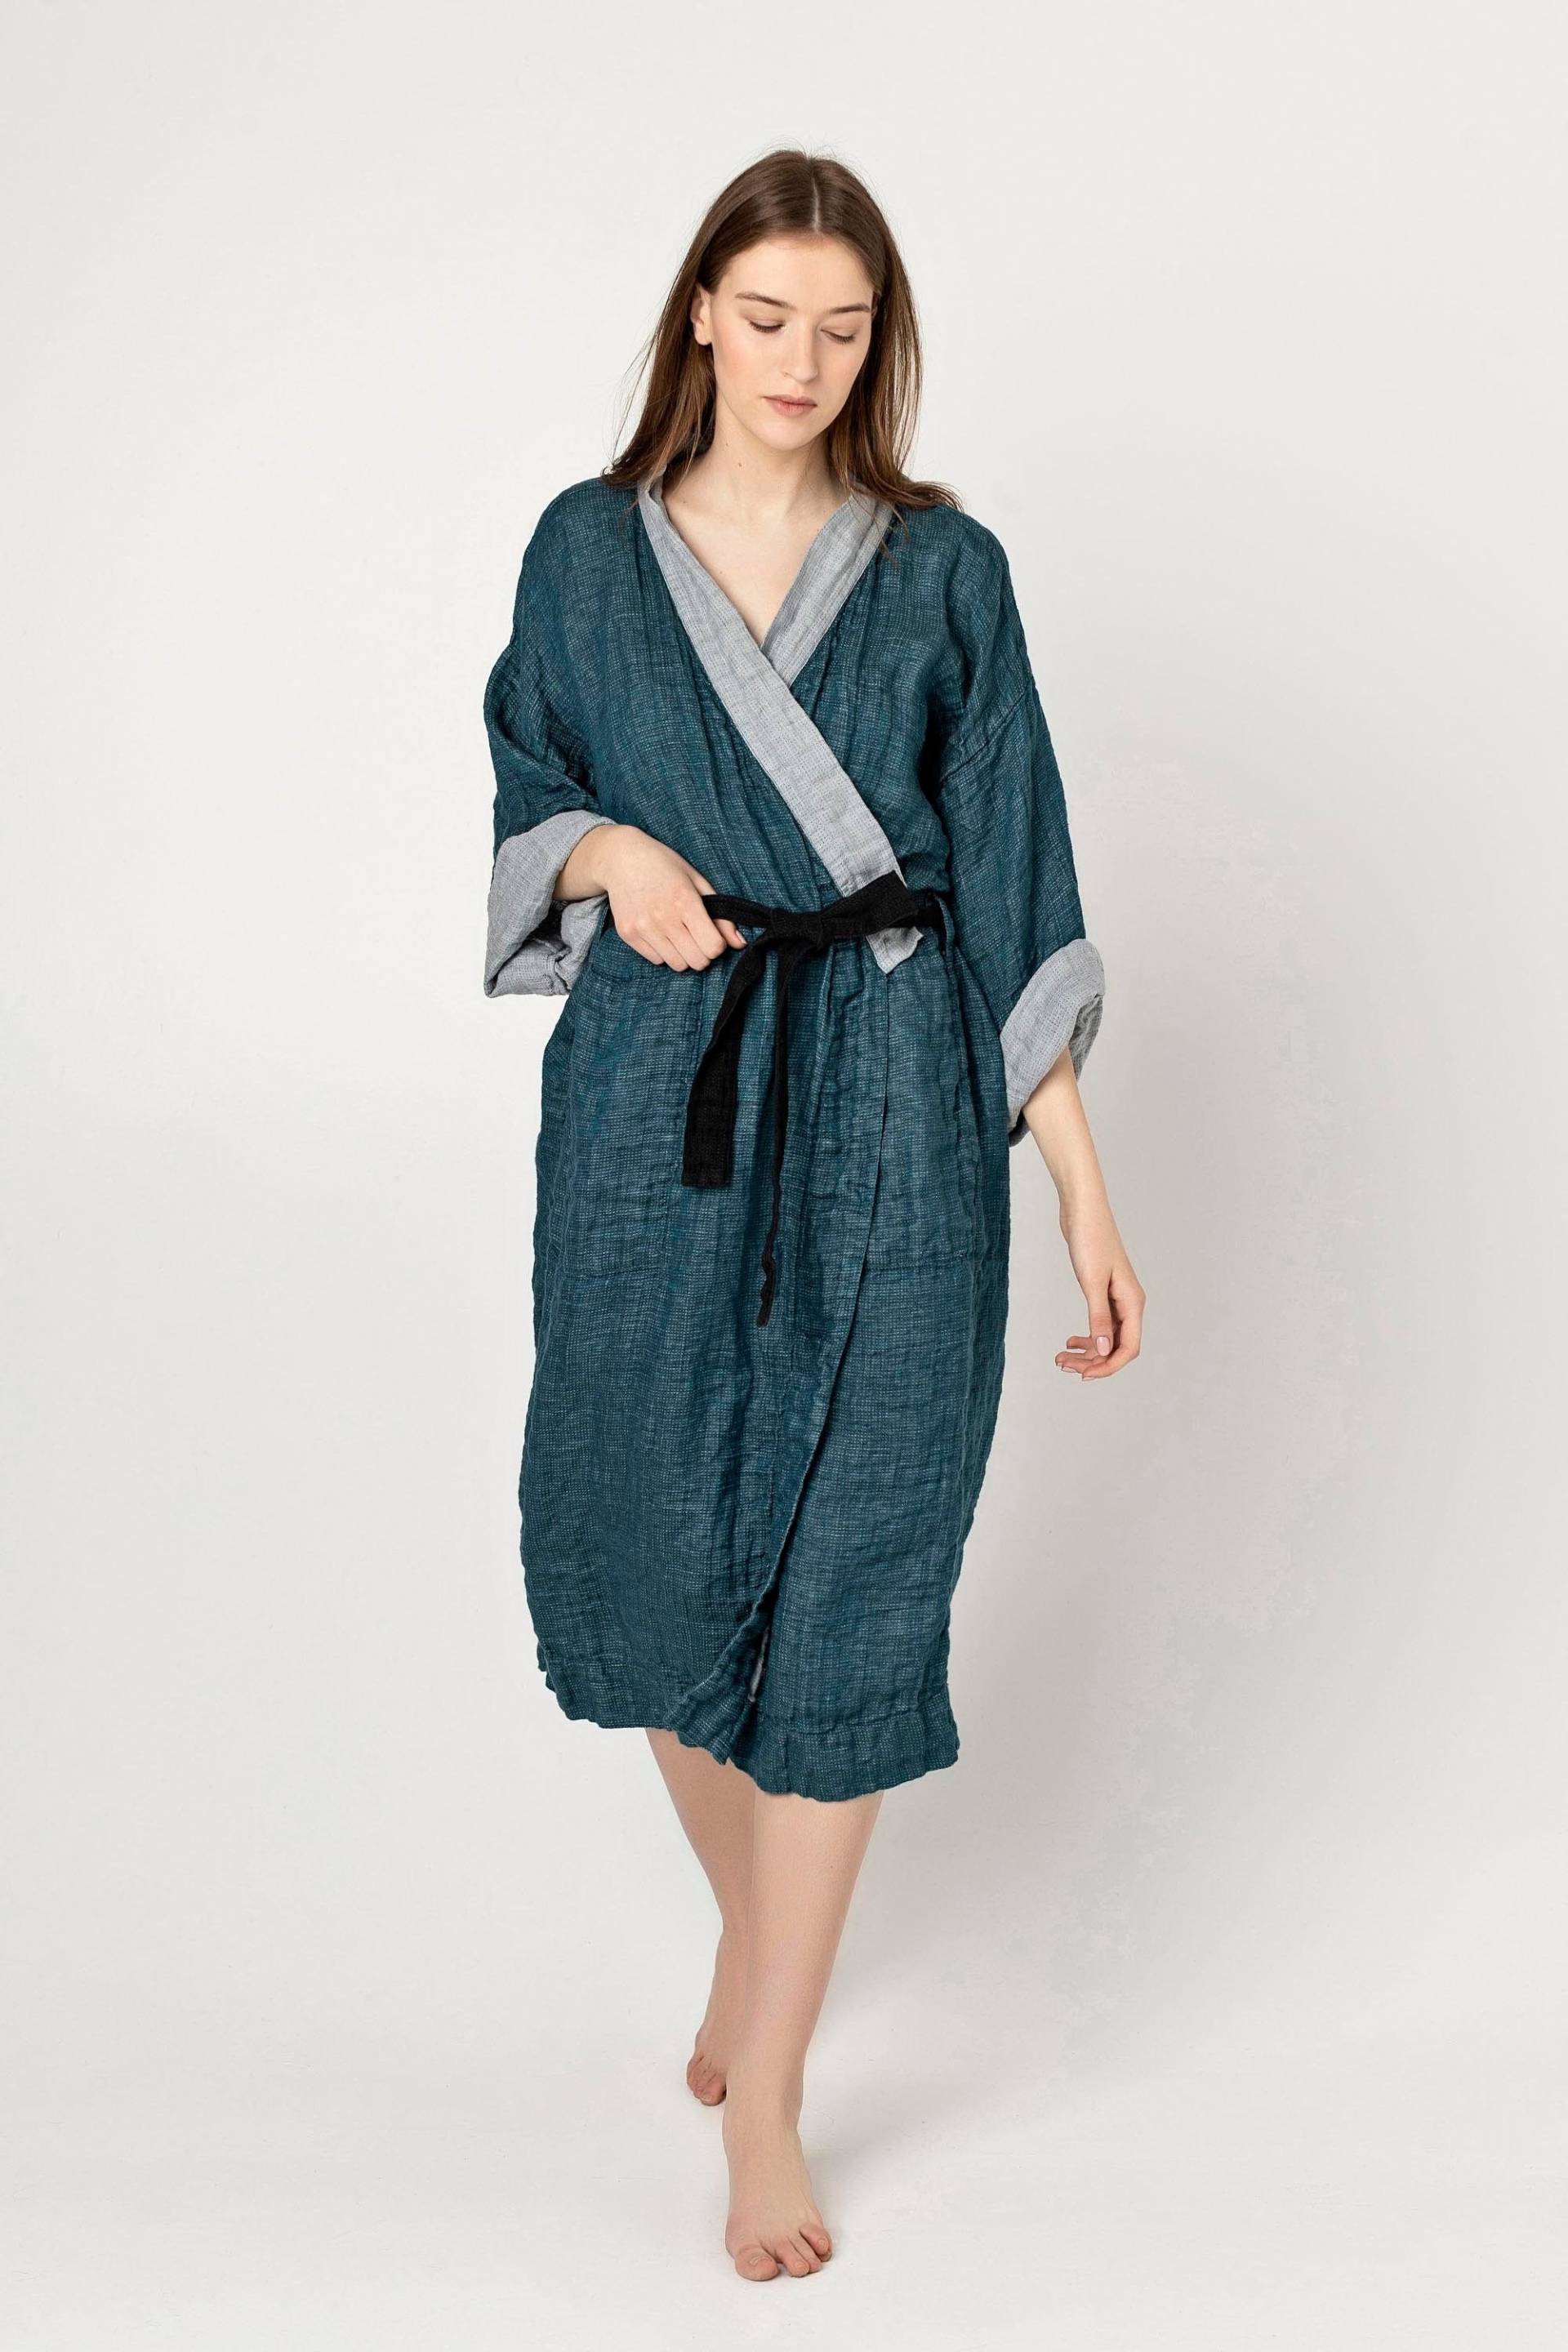 Nagoya Kimono Bademantel Aus Naturleinen, Peeignoir Und Pur Lin, Lin Pour Femme, Stilvolle Homewear von TwoLINEN